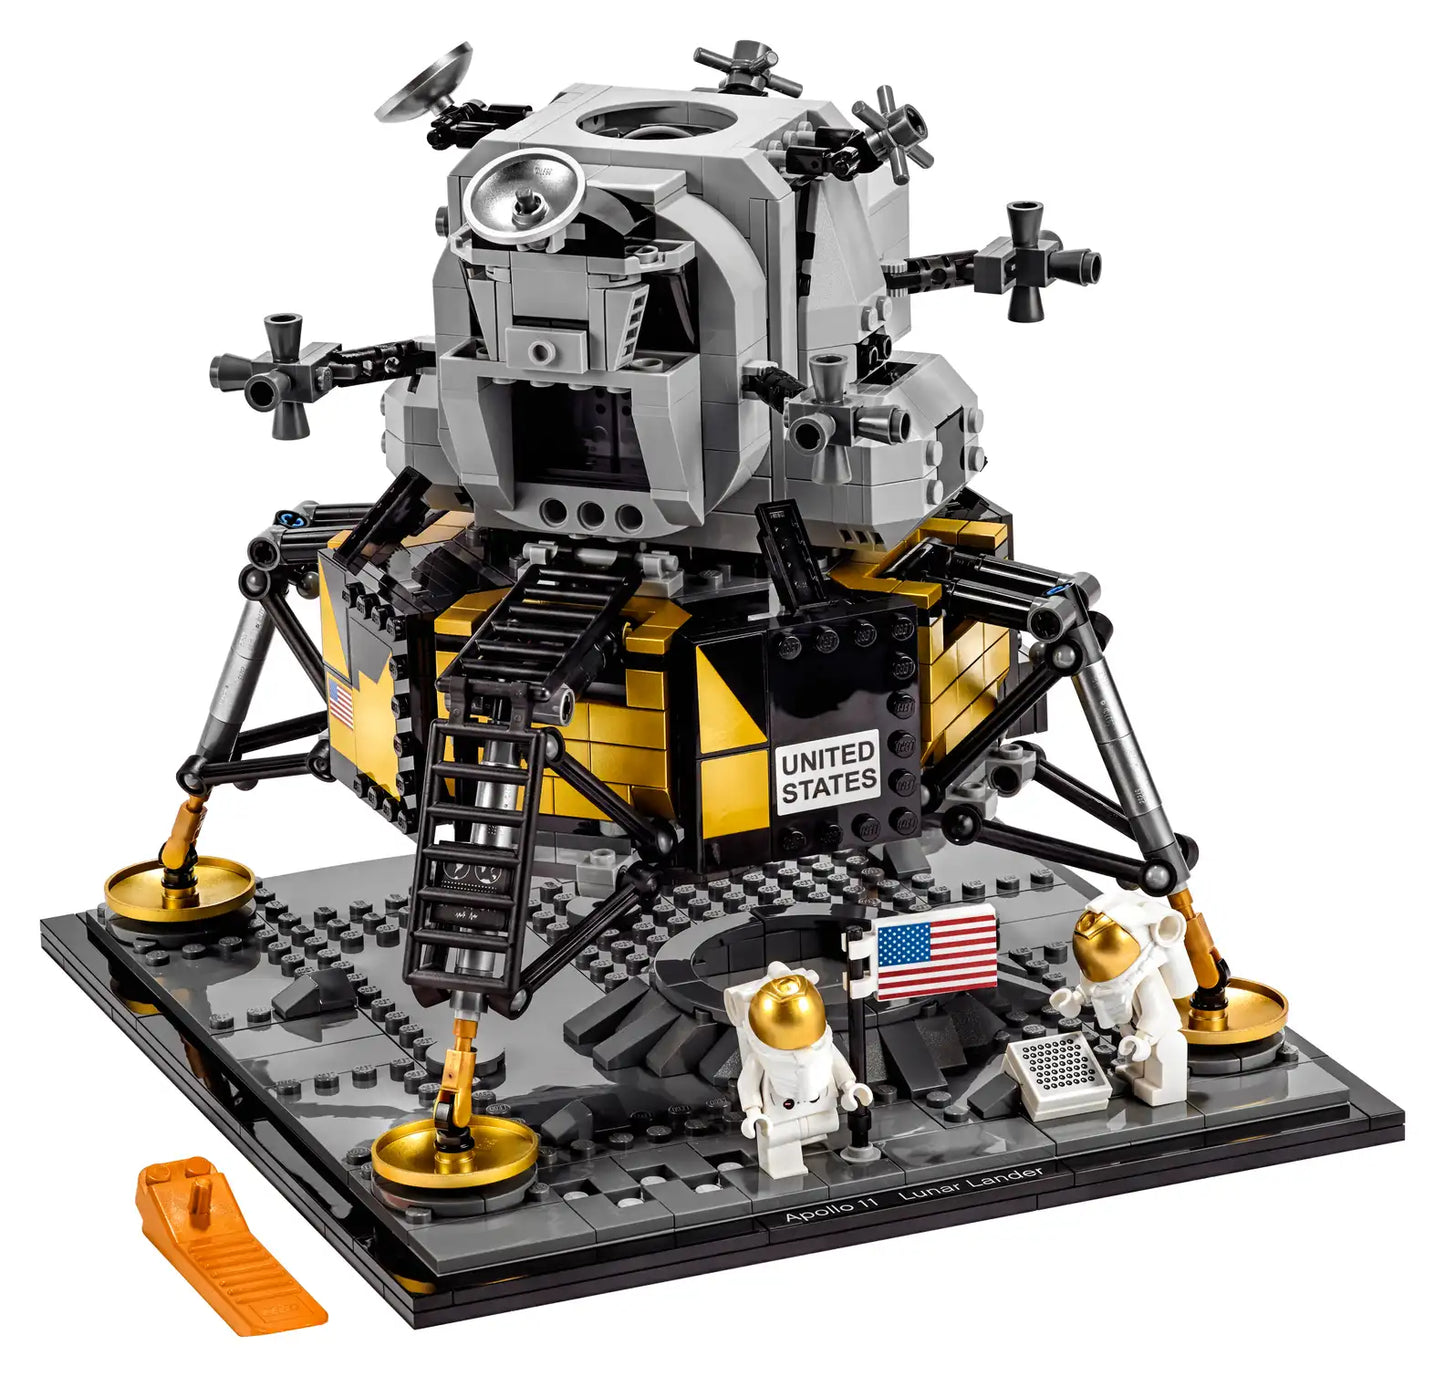 Lego 10266 Nasa Apollo 11 Lunar Lander